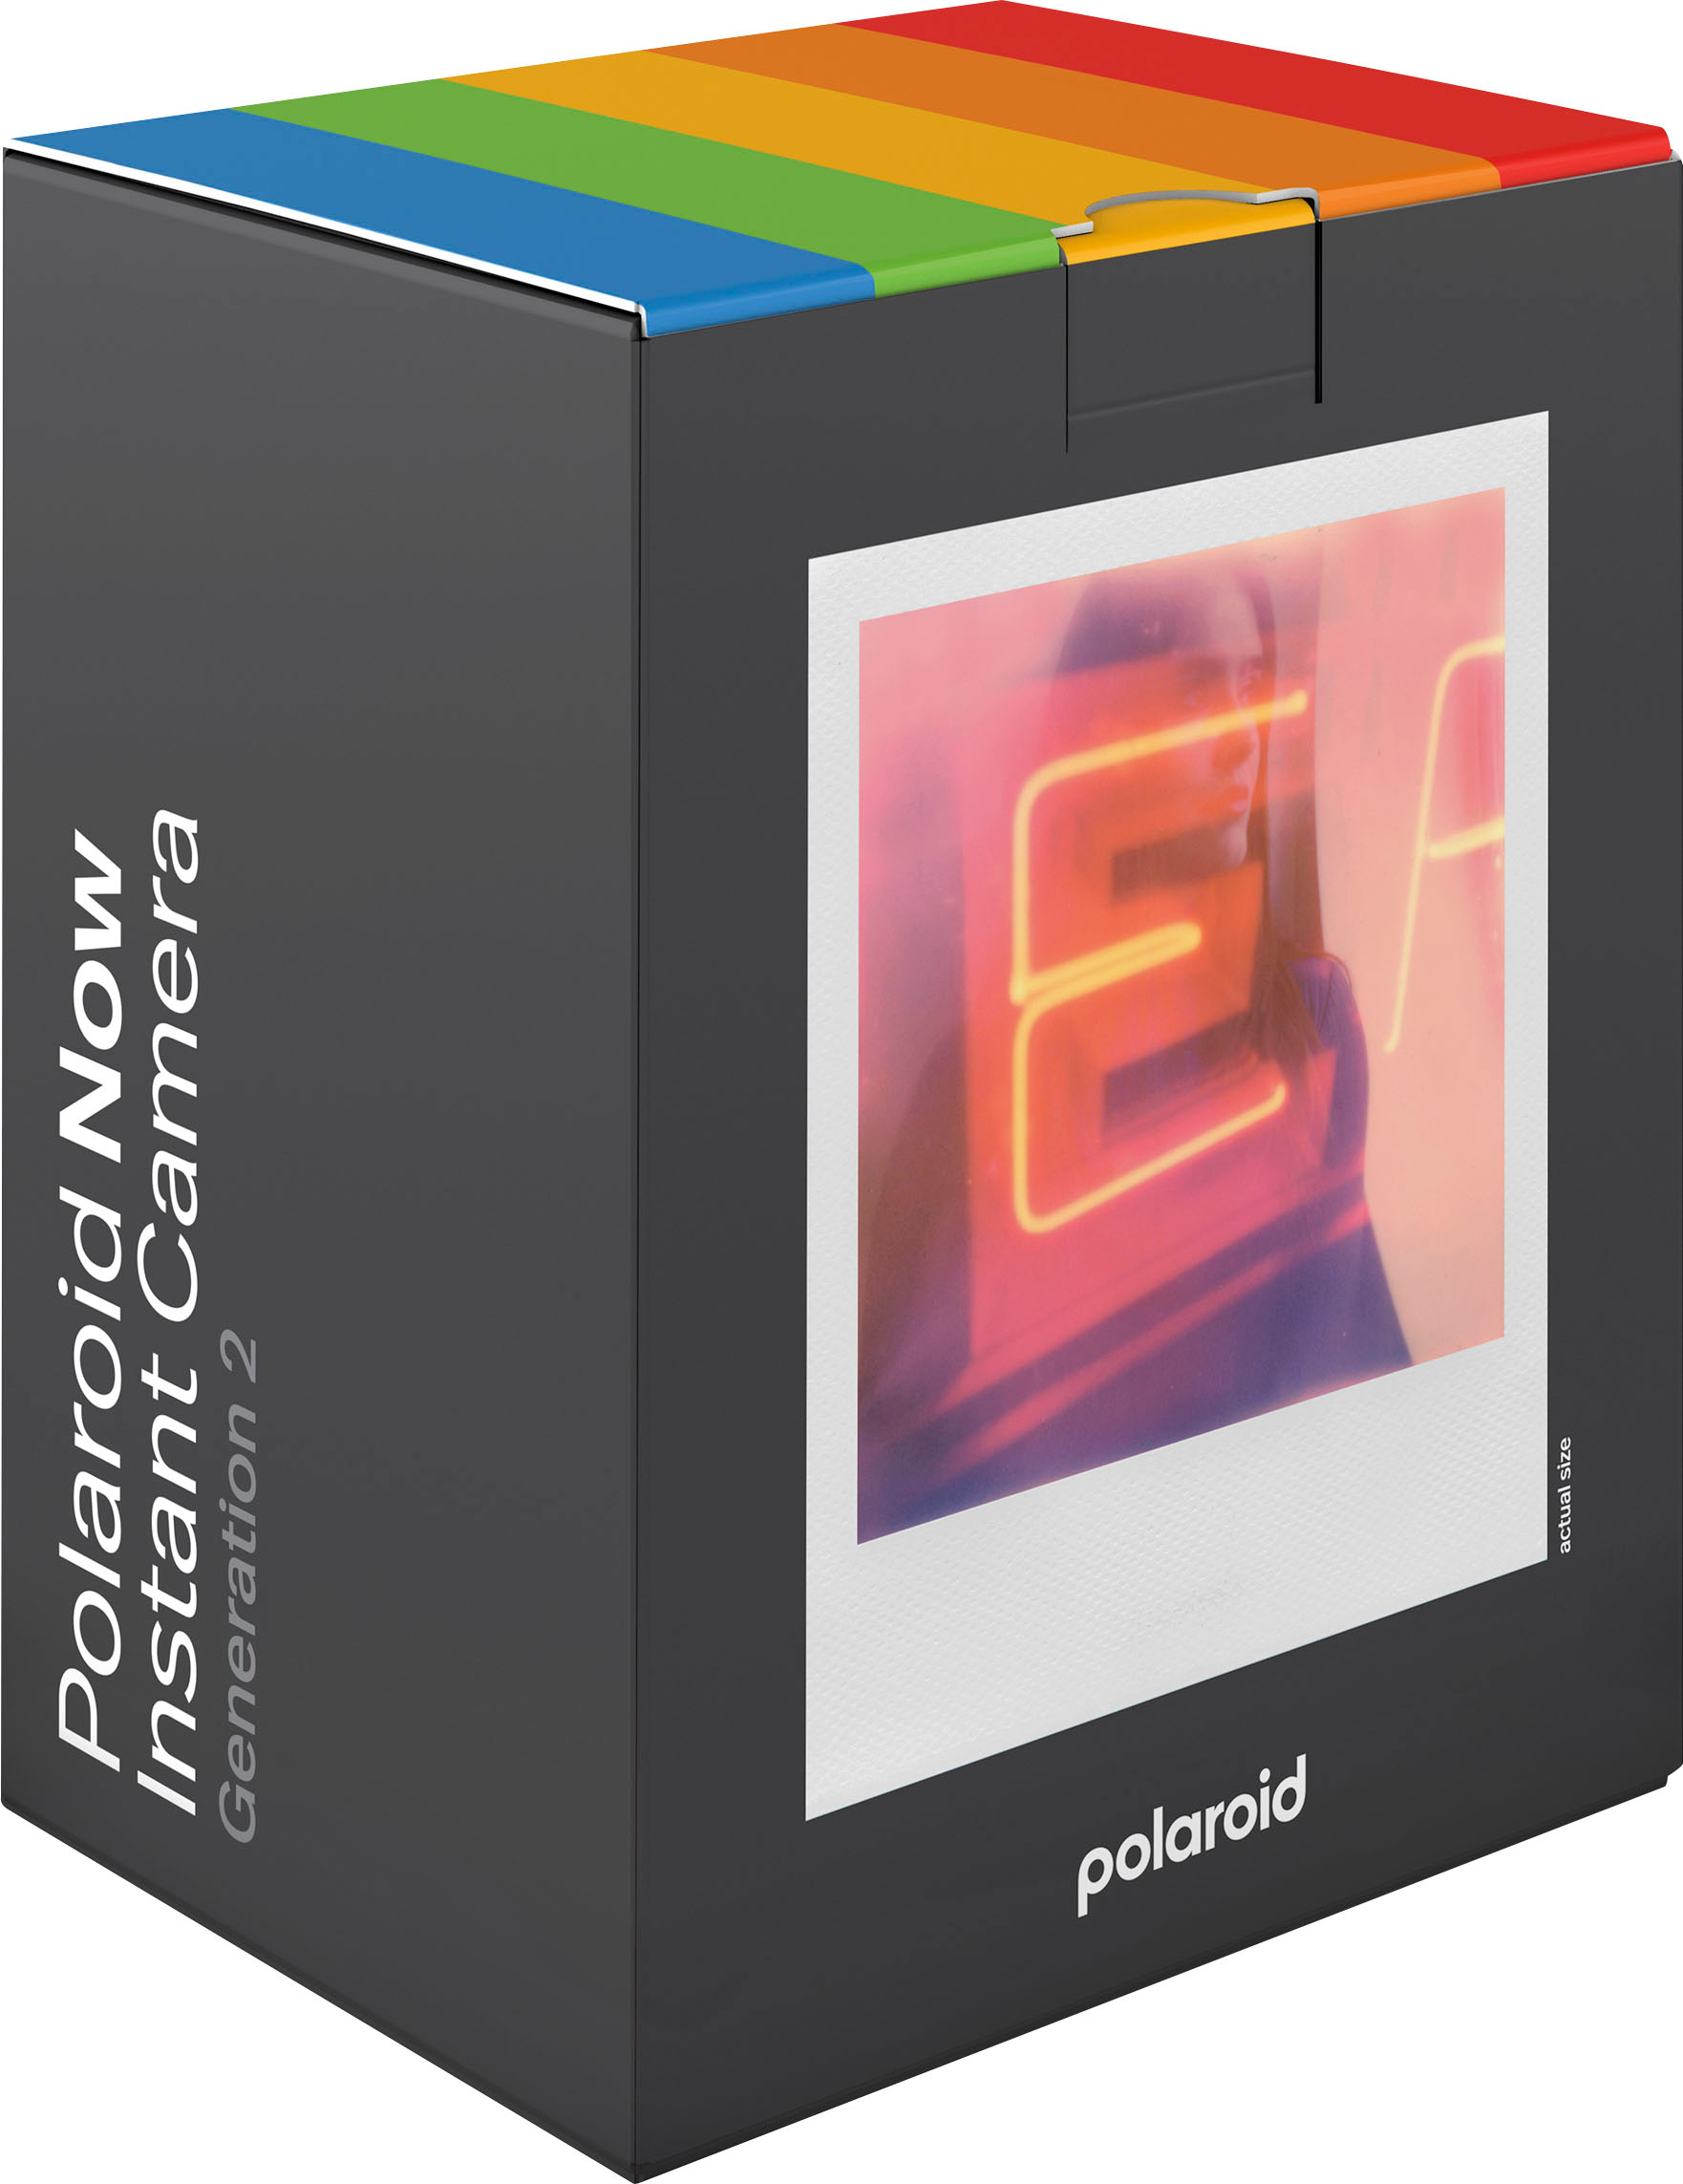 Polaroid Travel Album, Fujifilm Wide Album, Polaroid Onestep 2 Album,  Polaroid Original Album, Polaroid 600 Album may a Month for Deliver 